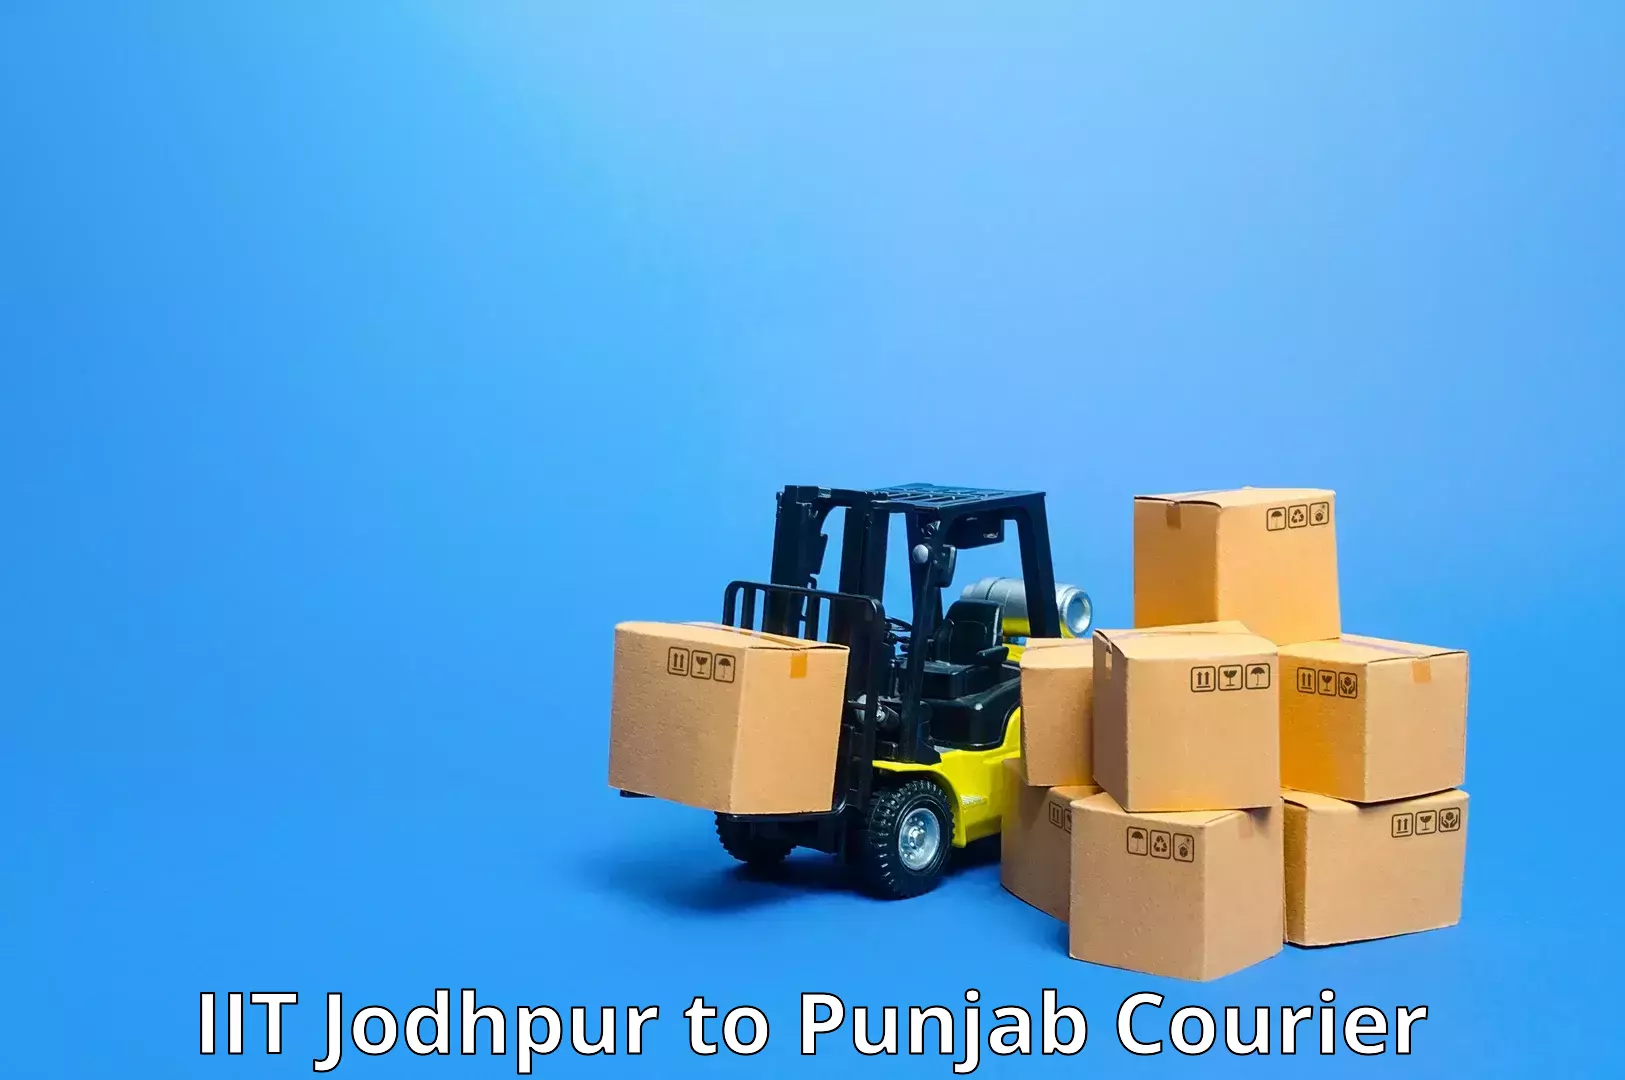 Ocean freight courier in IIT Jodhpur to Sirhind Fatehgarh